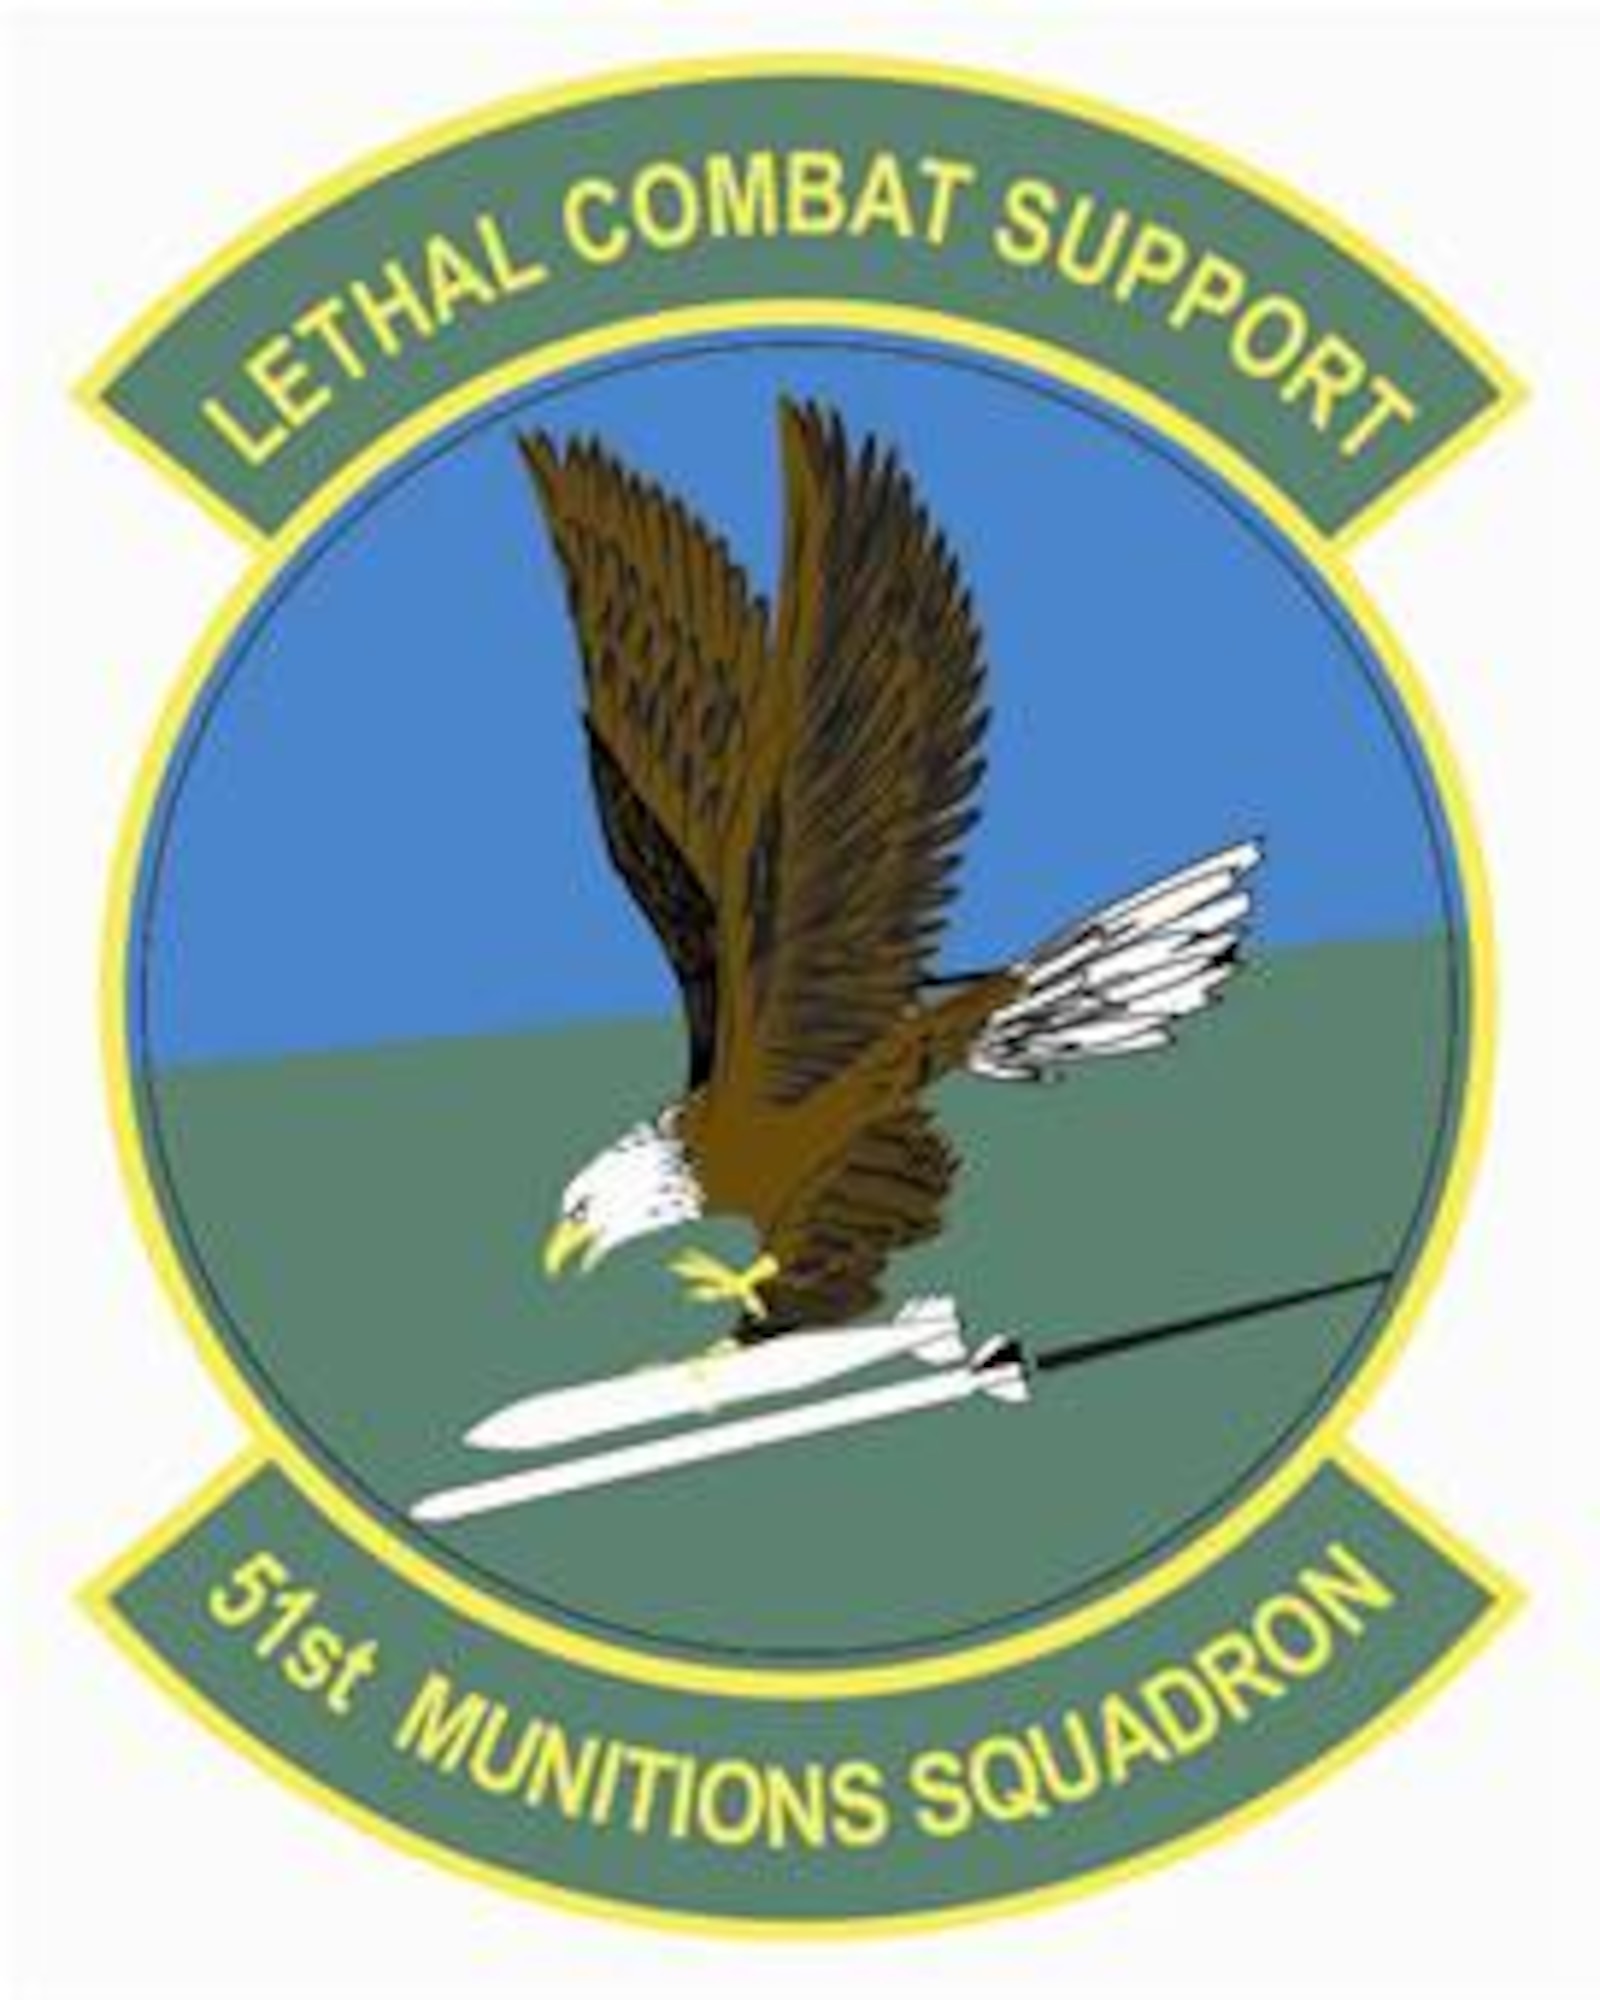 51st Munitions Squadron